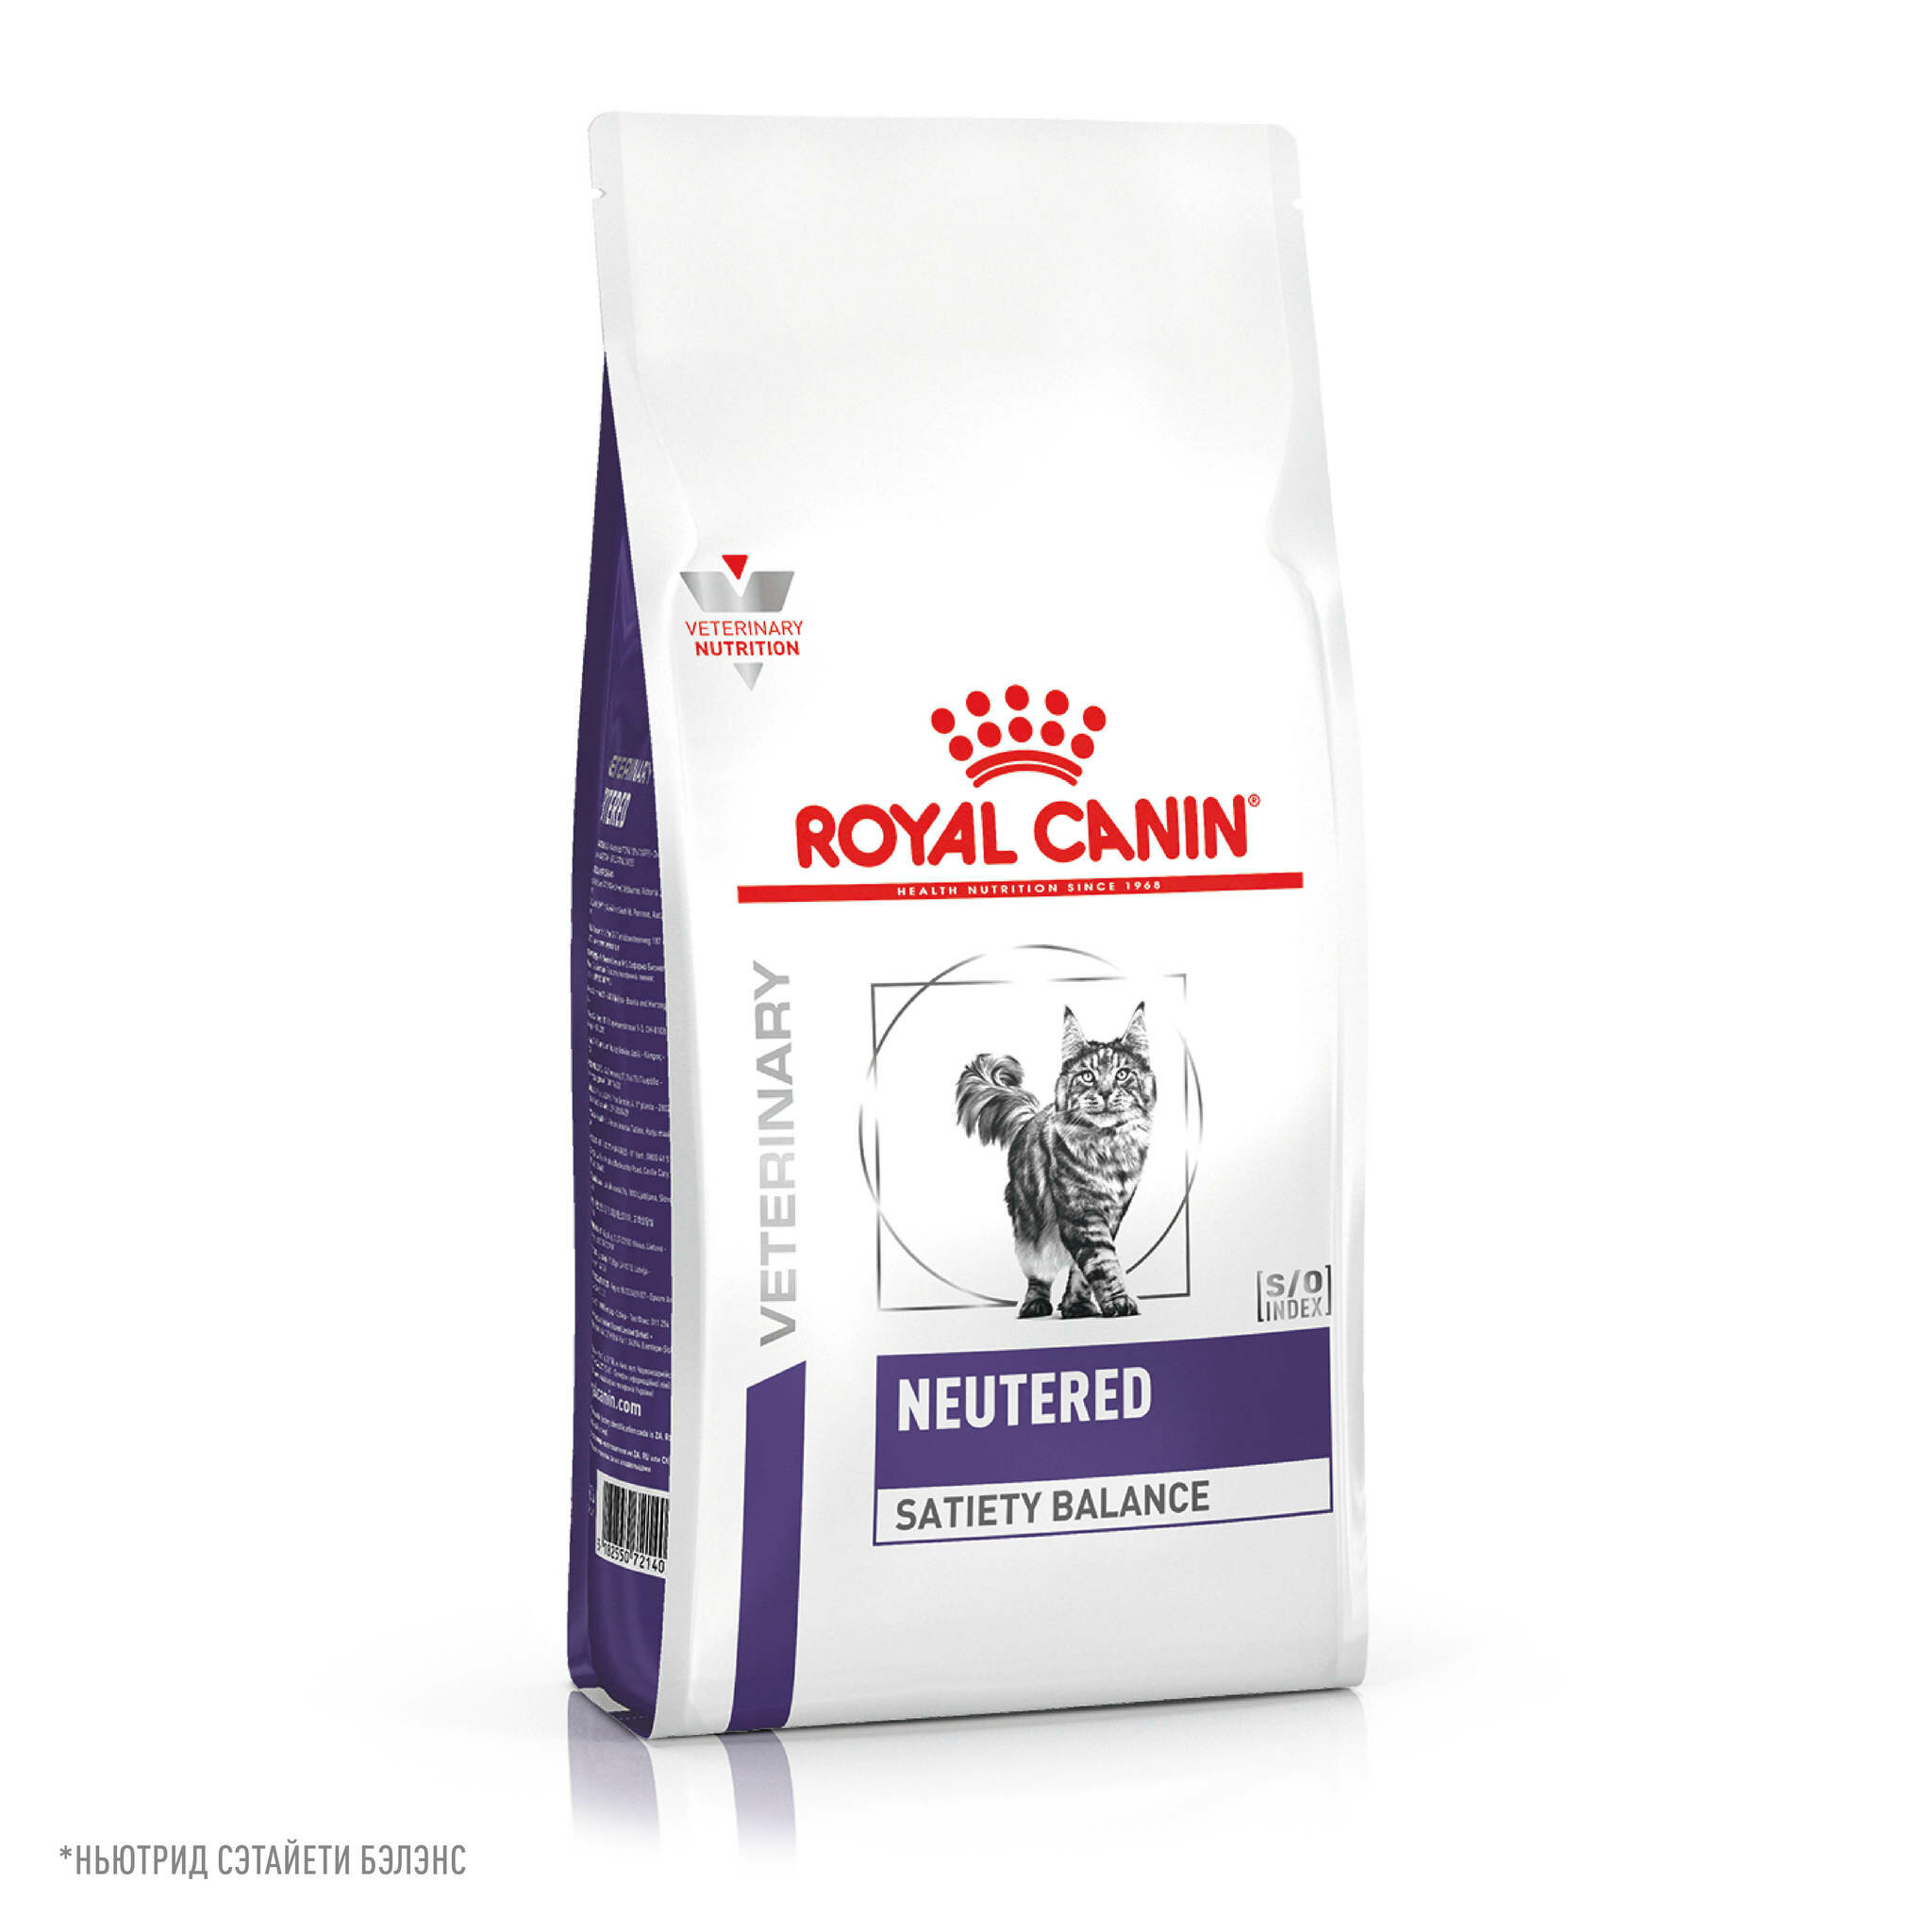 Royal Canin Neutered Satiety Balance сухой лечебный корм для стерилизованных кошек до 7лет 1,5кг